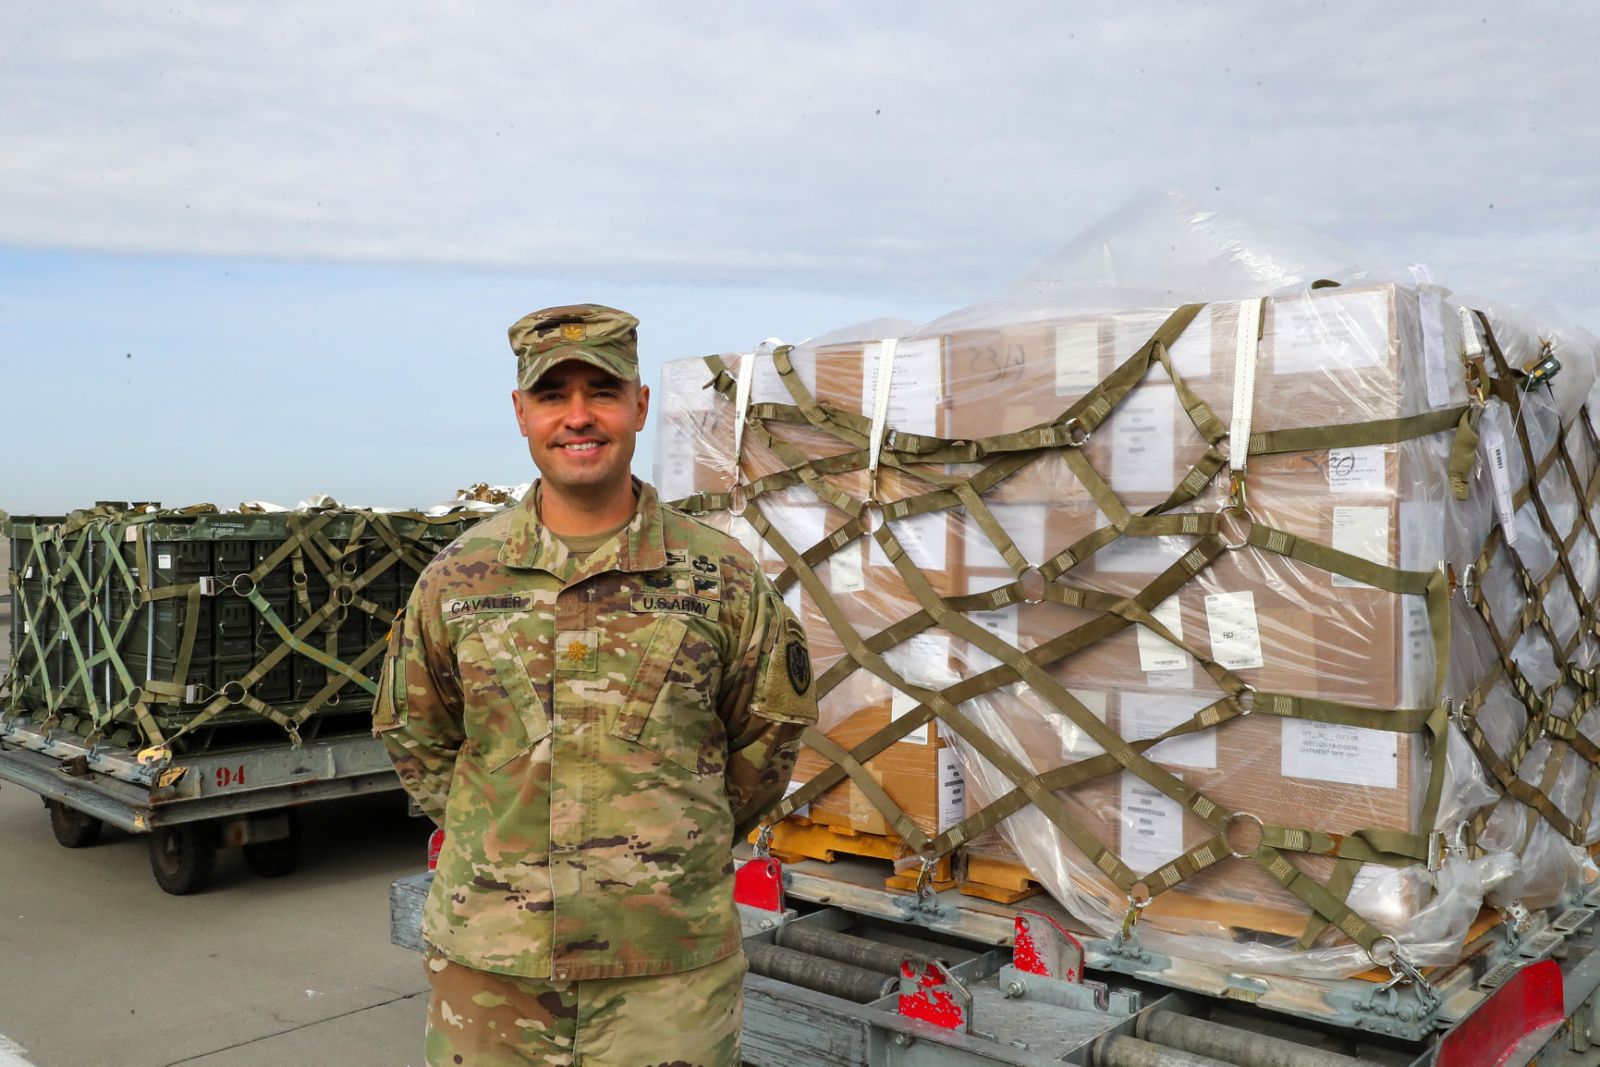 Київ отримав 90 тонн військових вантажів зі США, фото - Посольство США в Україні